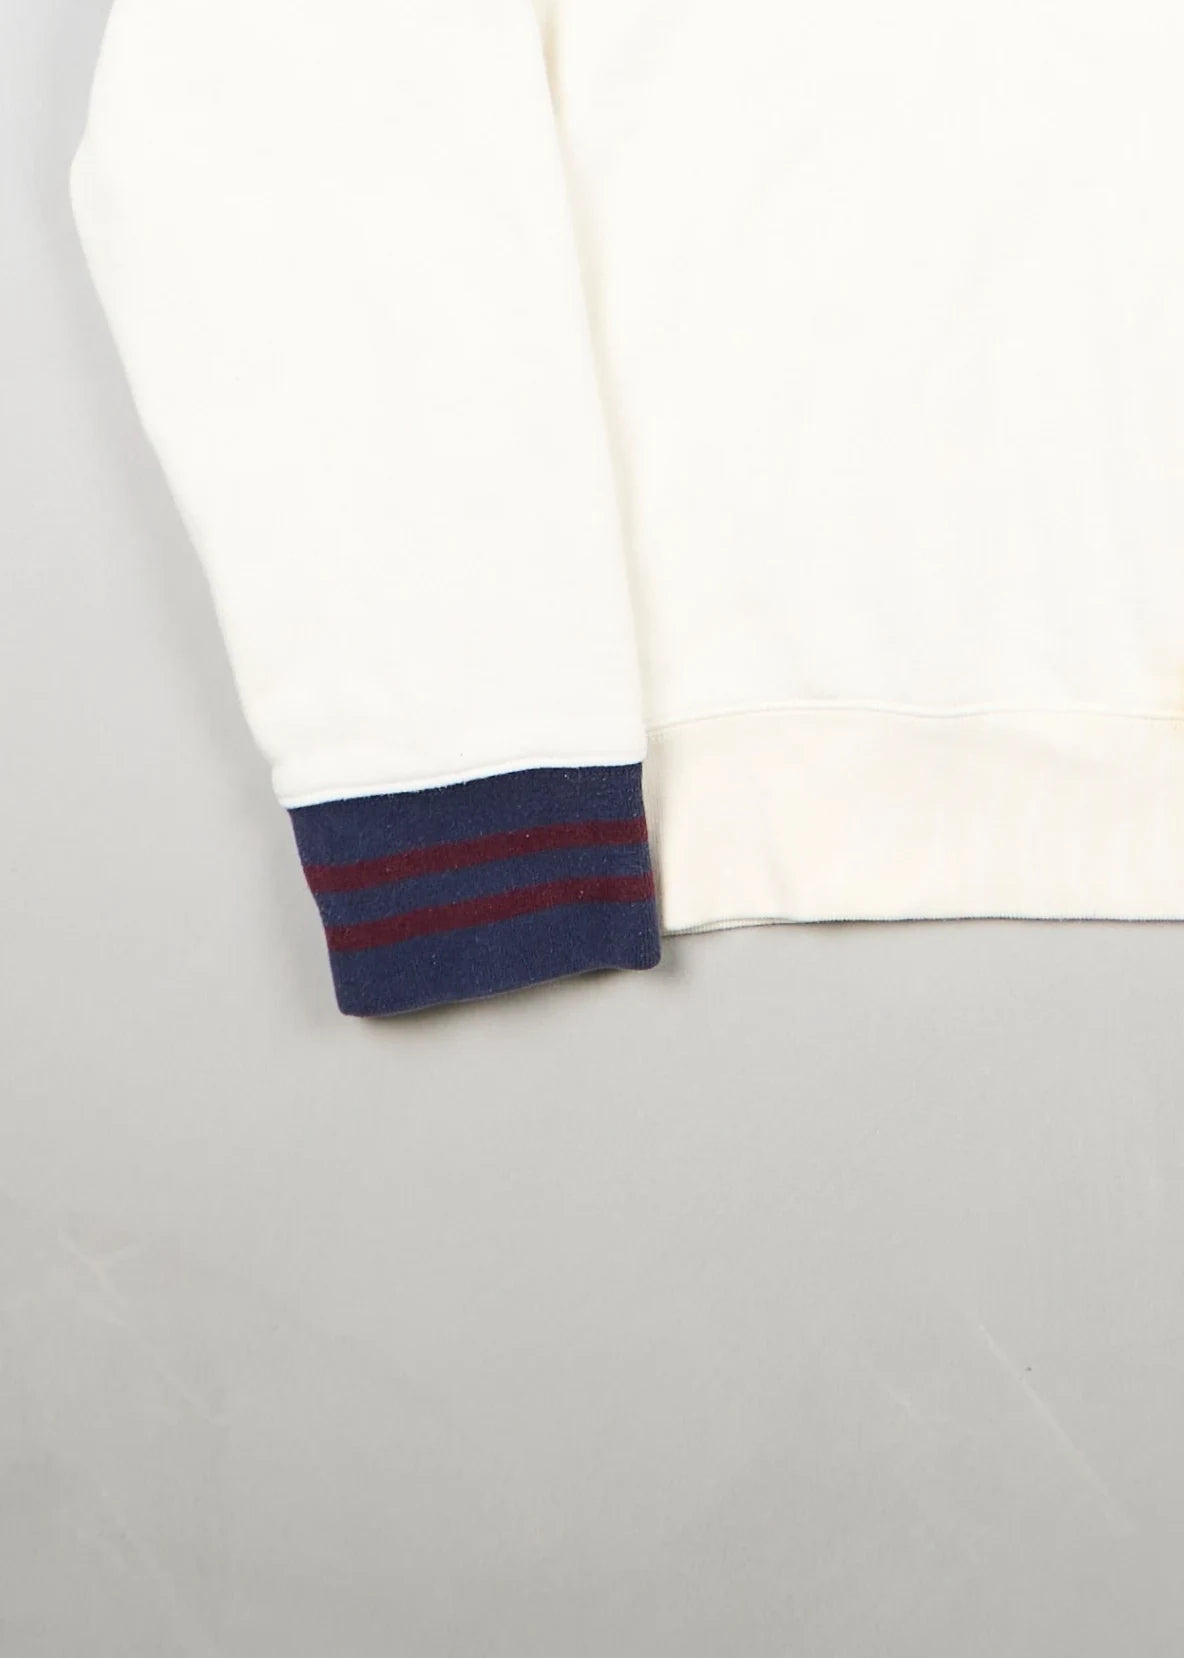 Ralph Lauren - Sweatshirt (L) Bottom Left